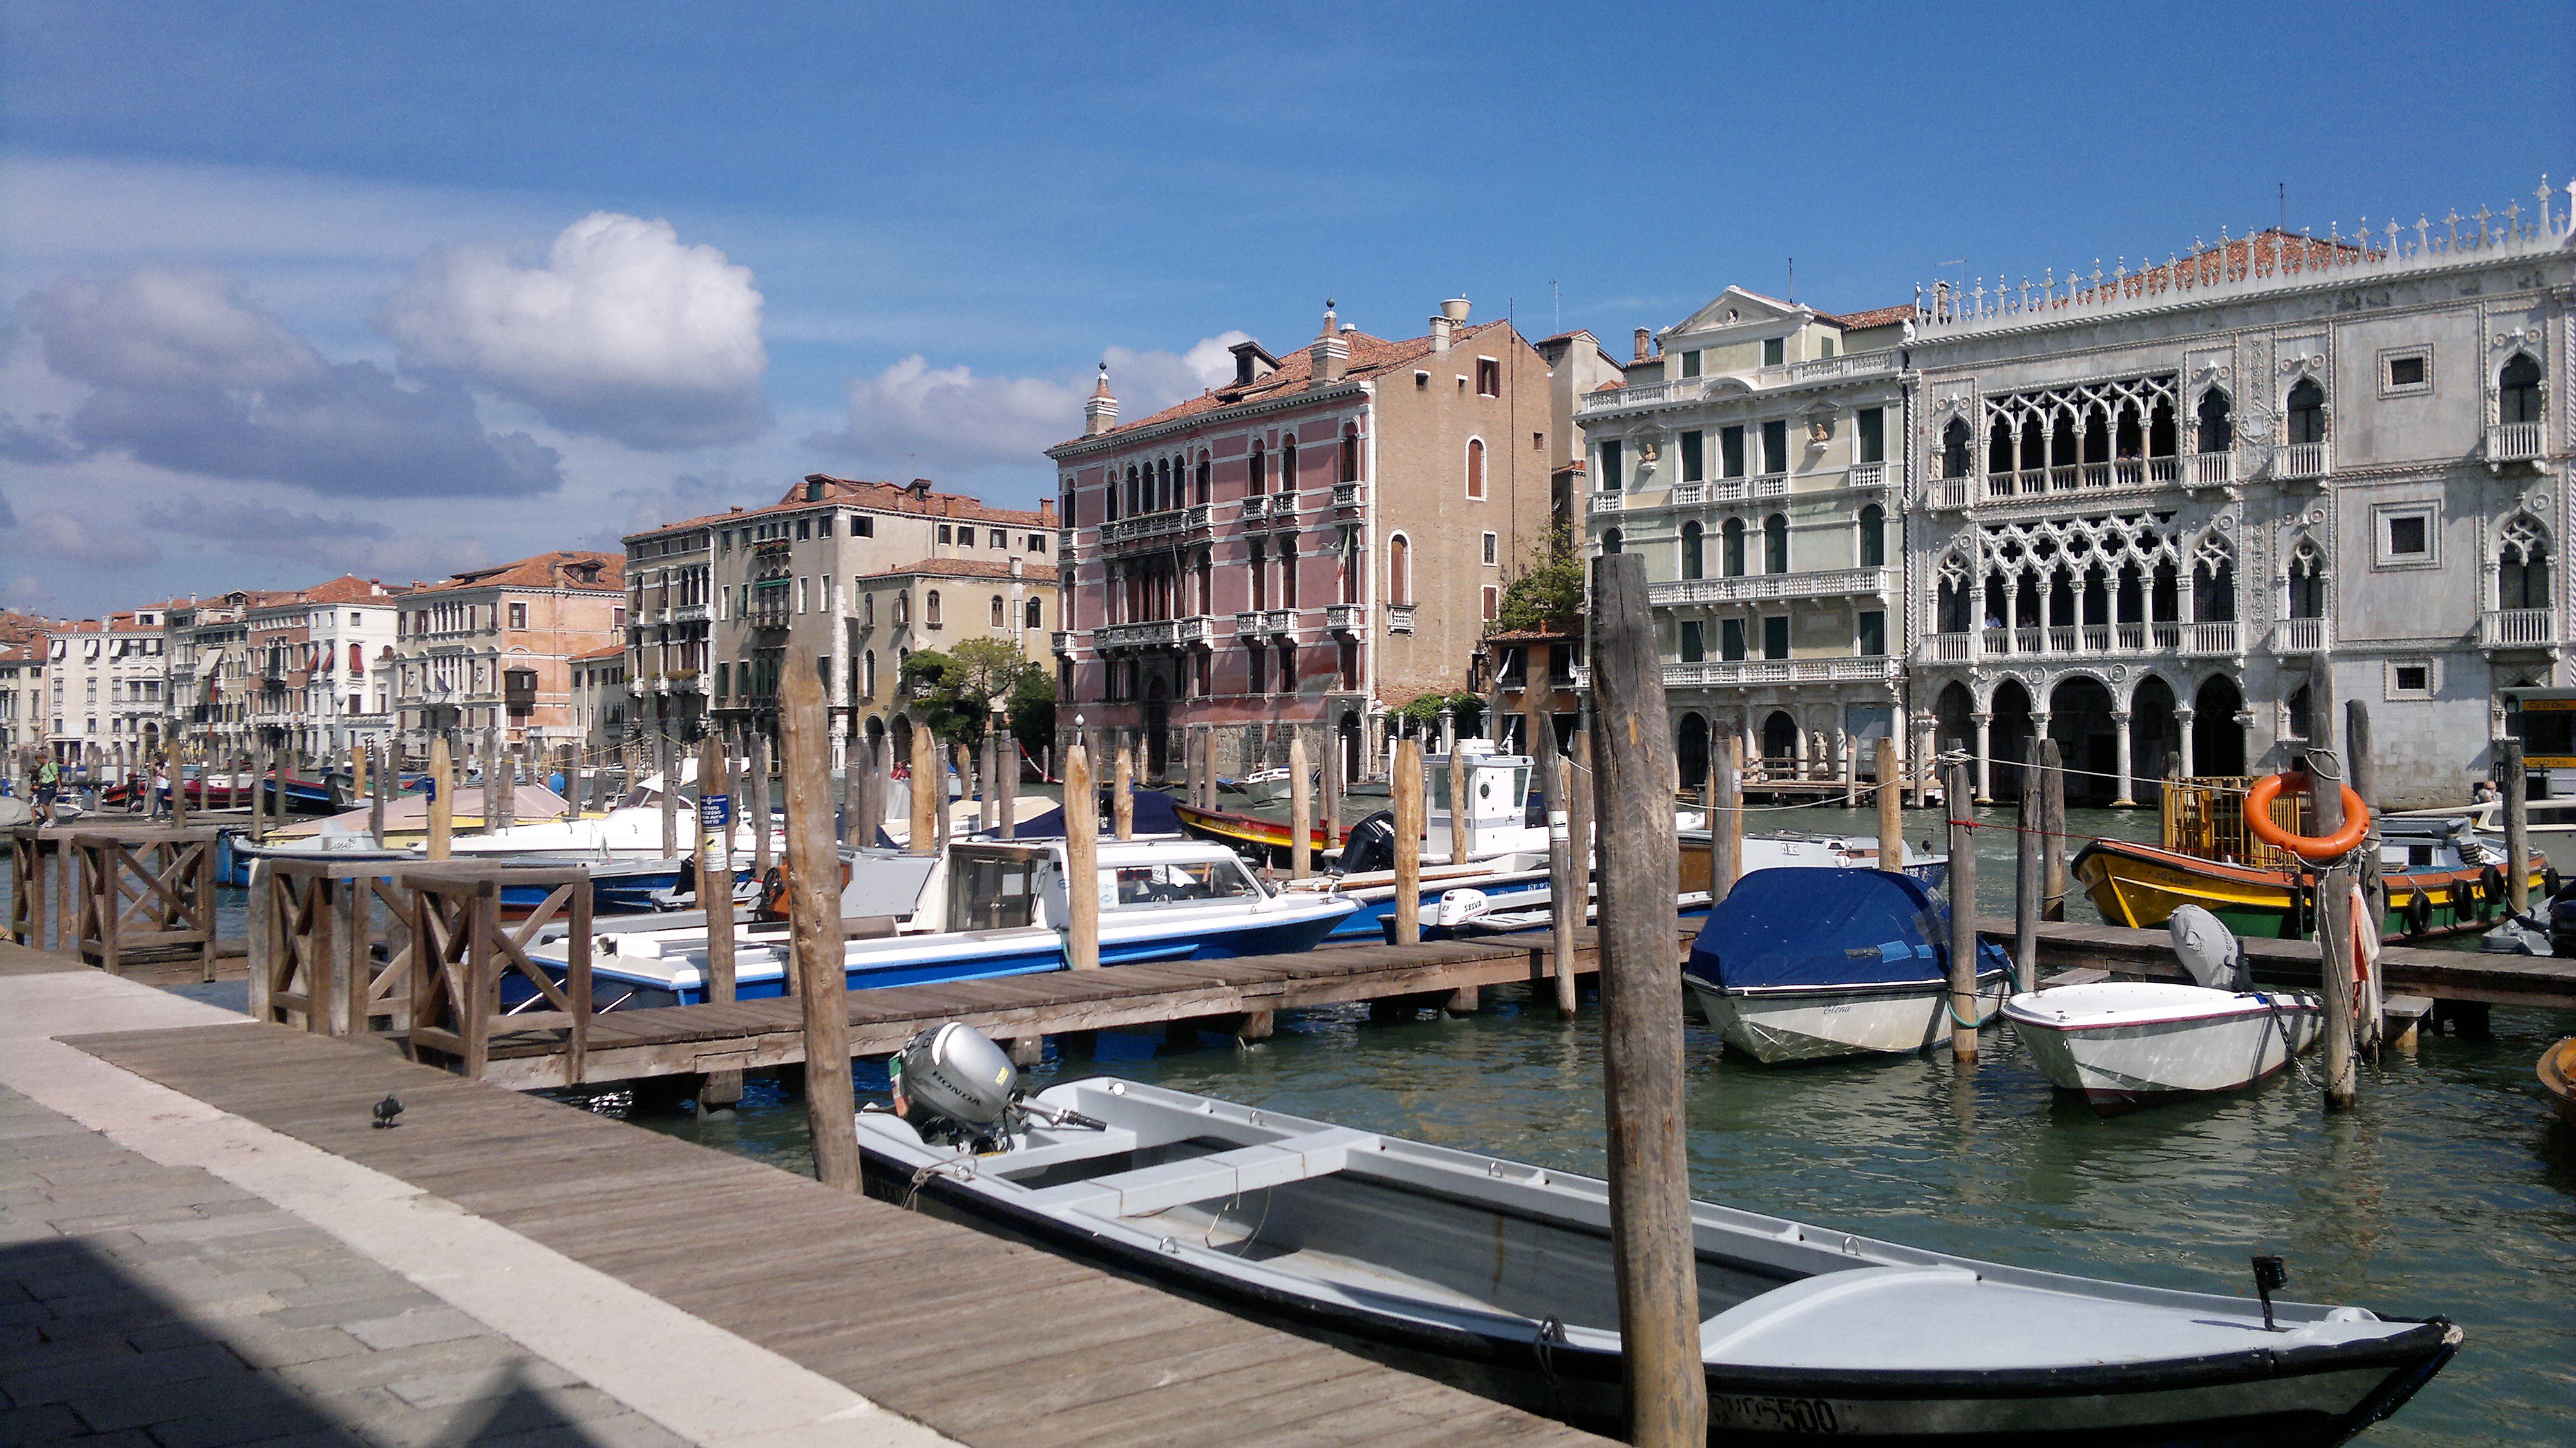 Visitare Venezia per la regata storica - i canali